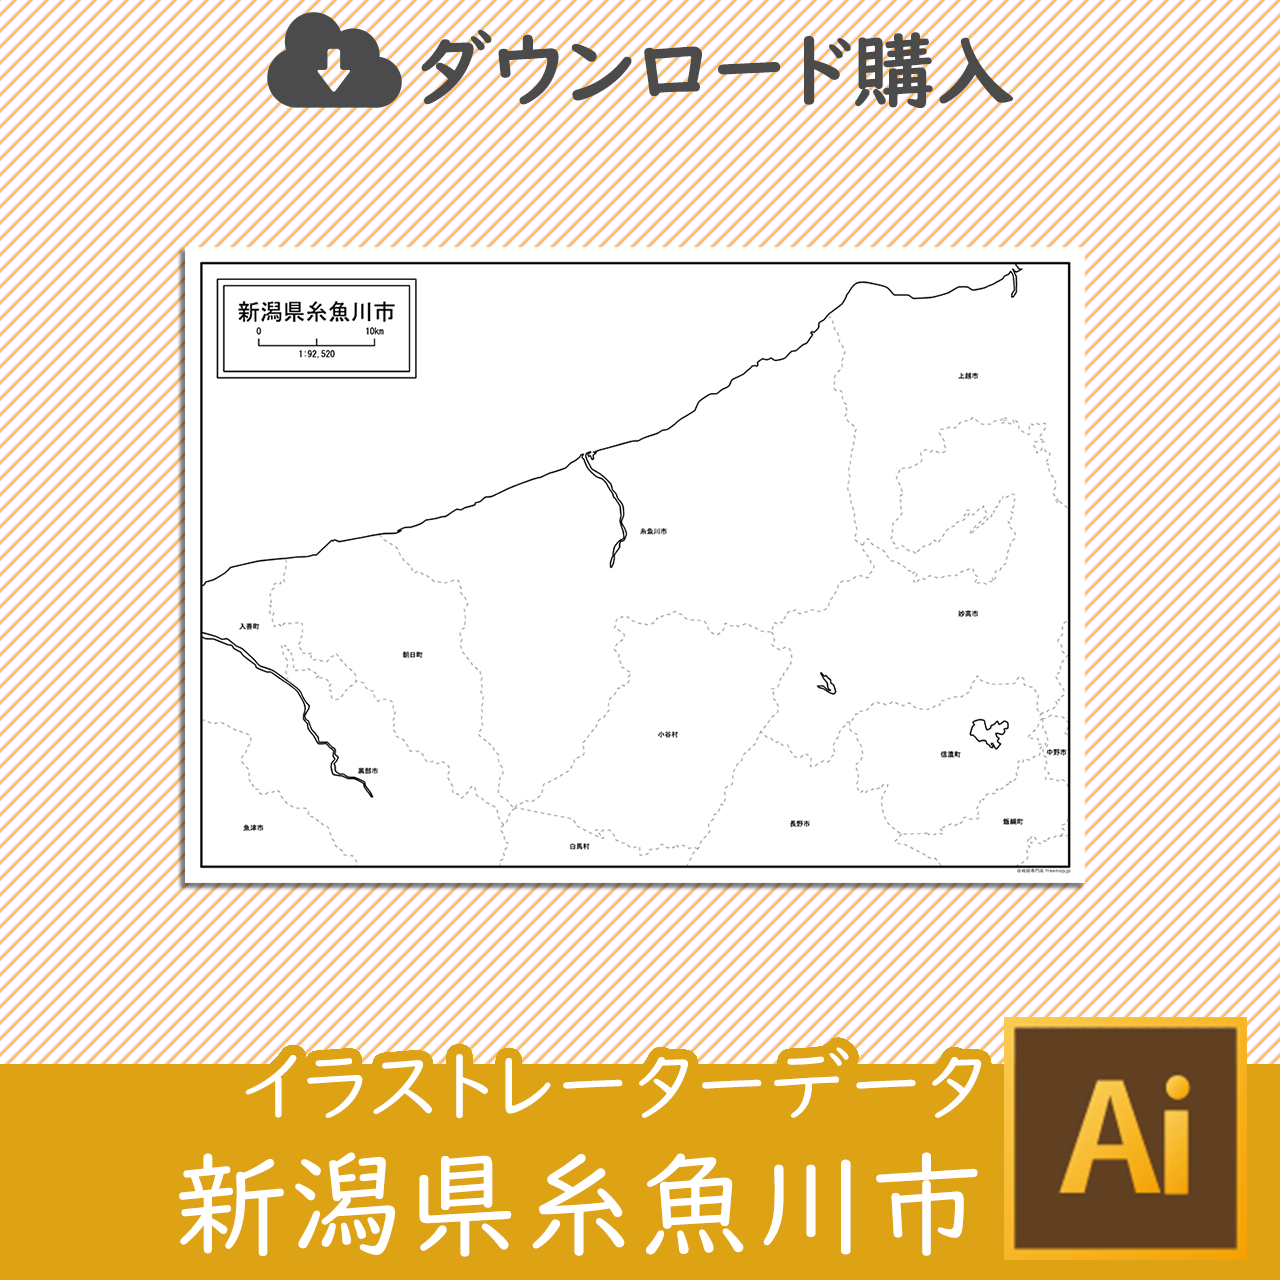 糸魚川市のaiデータのサムネイル画像